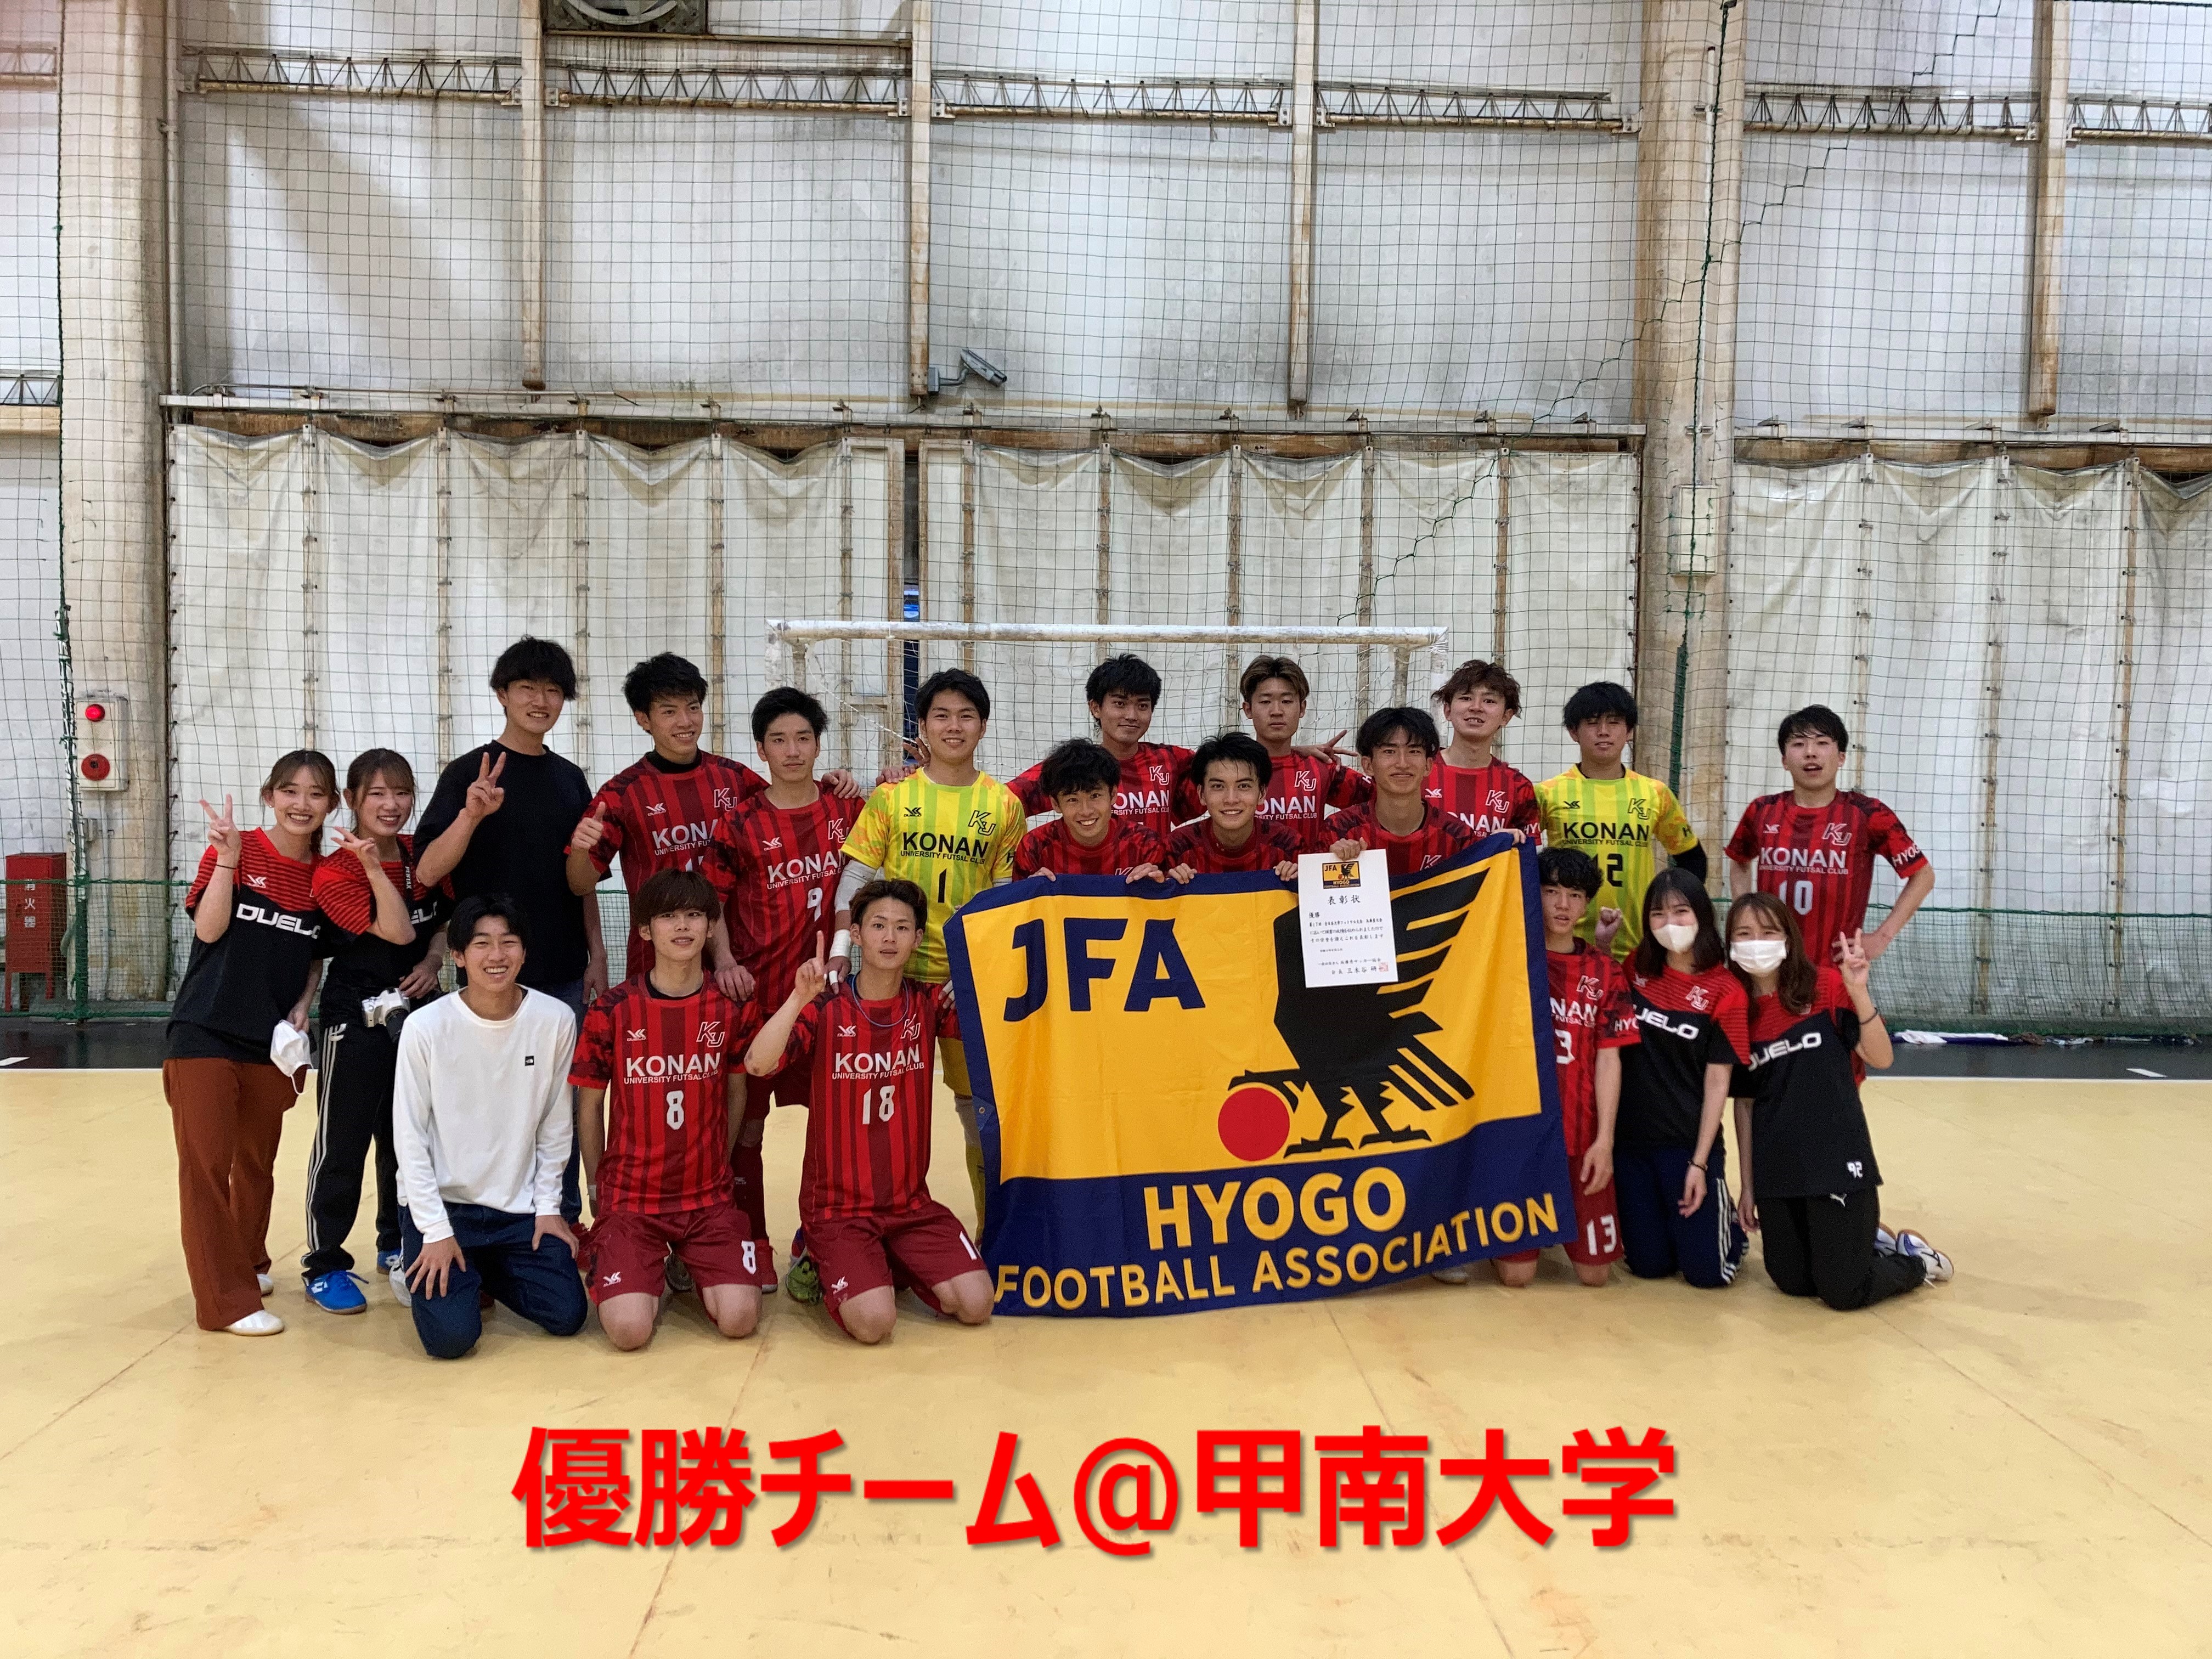 種別委員会 フットサル 兵庫県サッカー協会